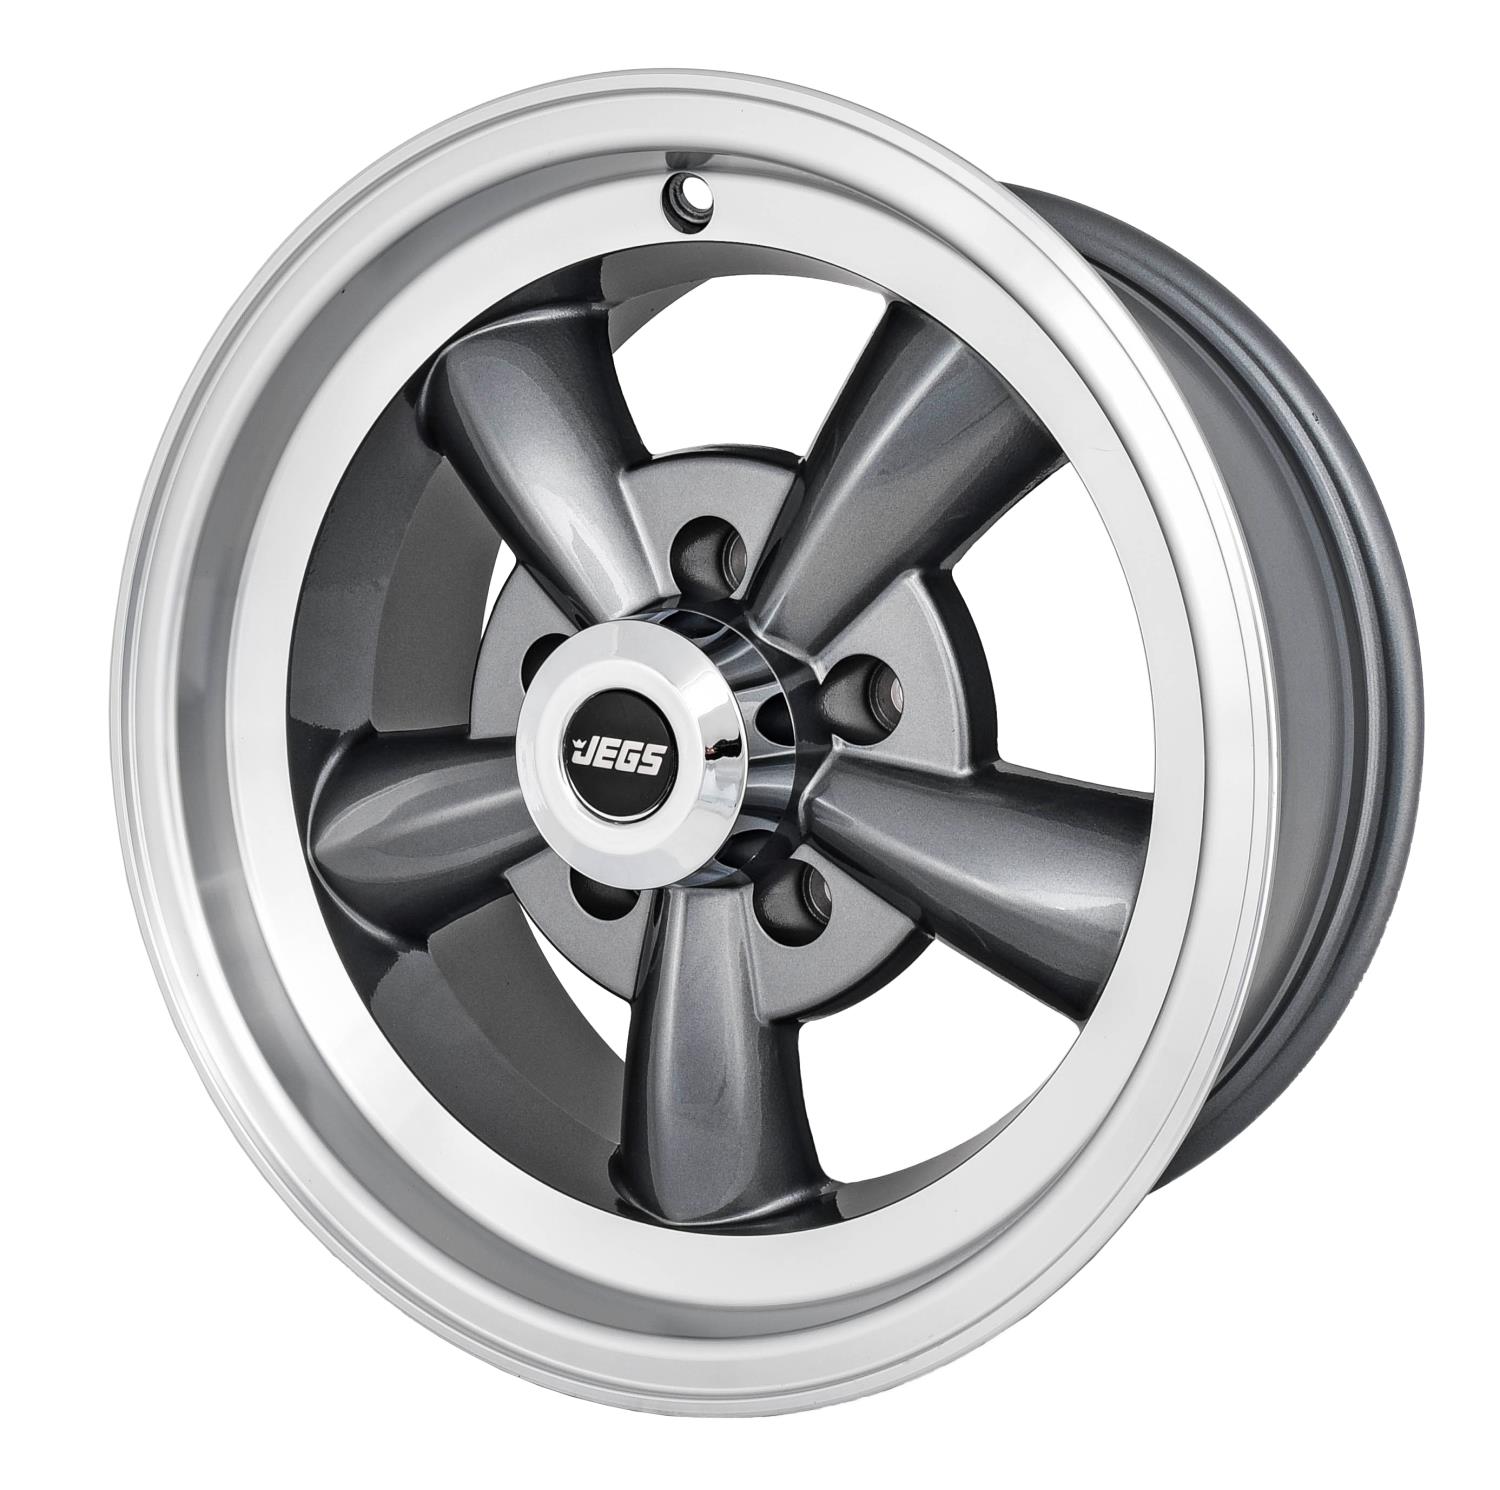 Sport Torque Wheel [Size: 15" x 7"] Polished Lip with Grey Spokes